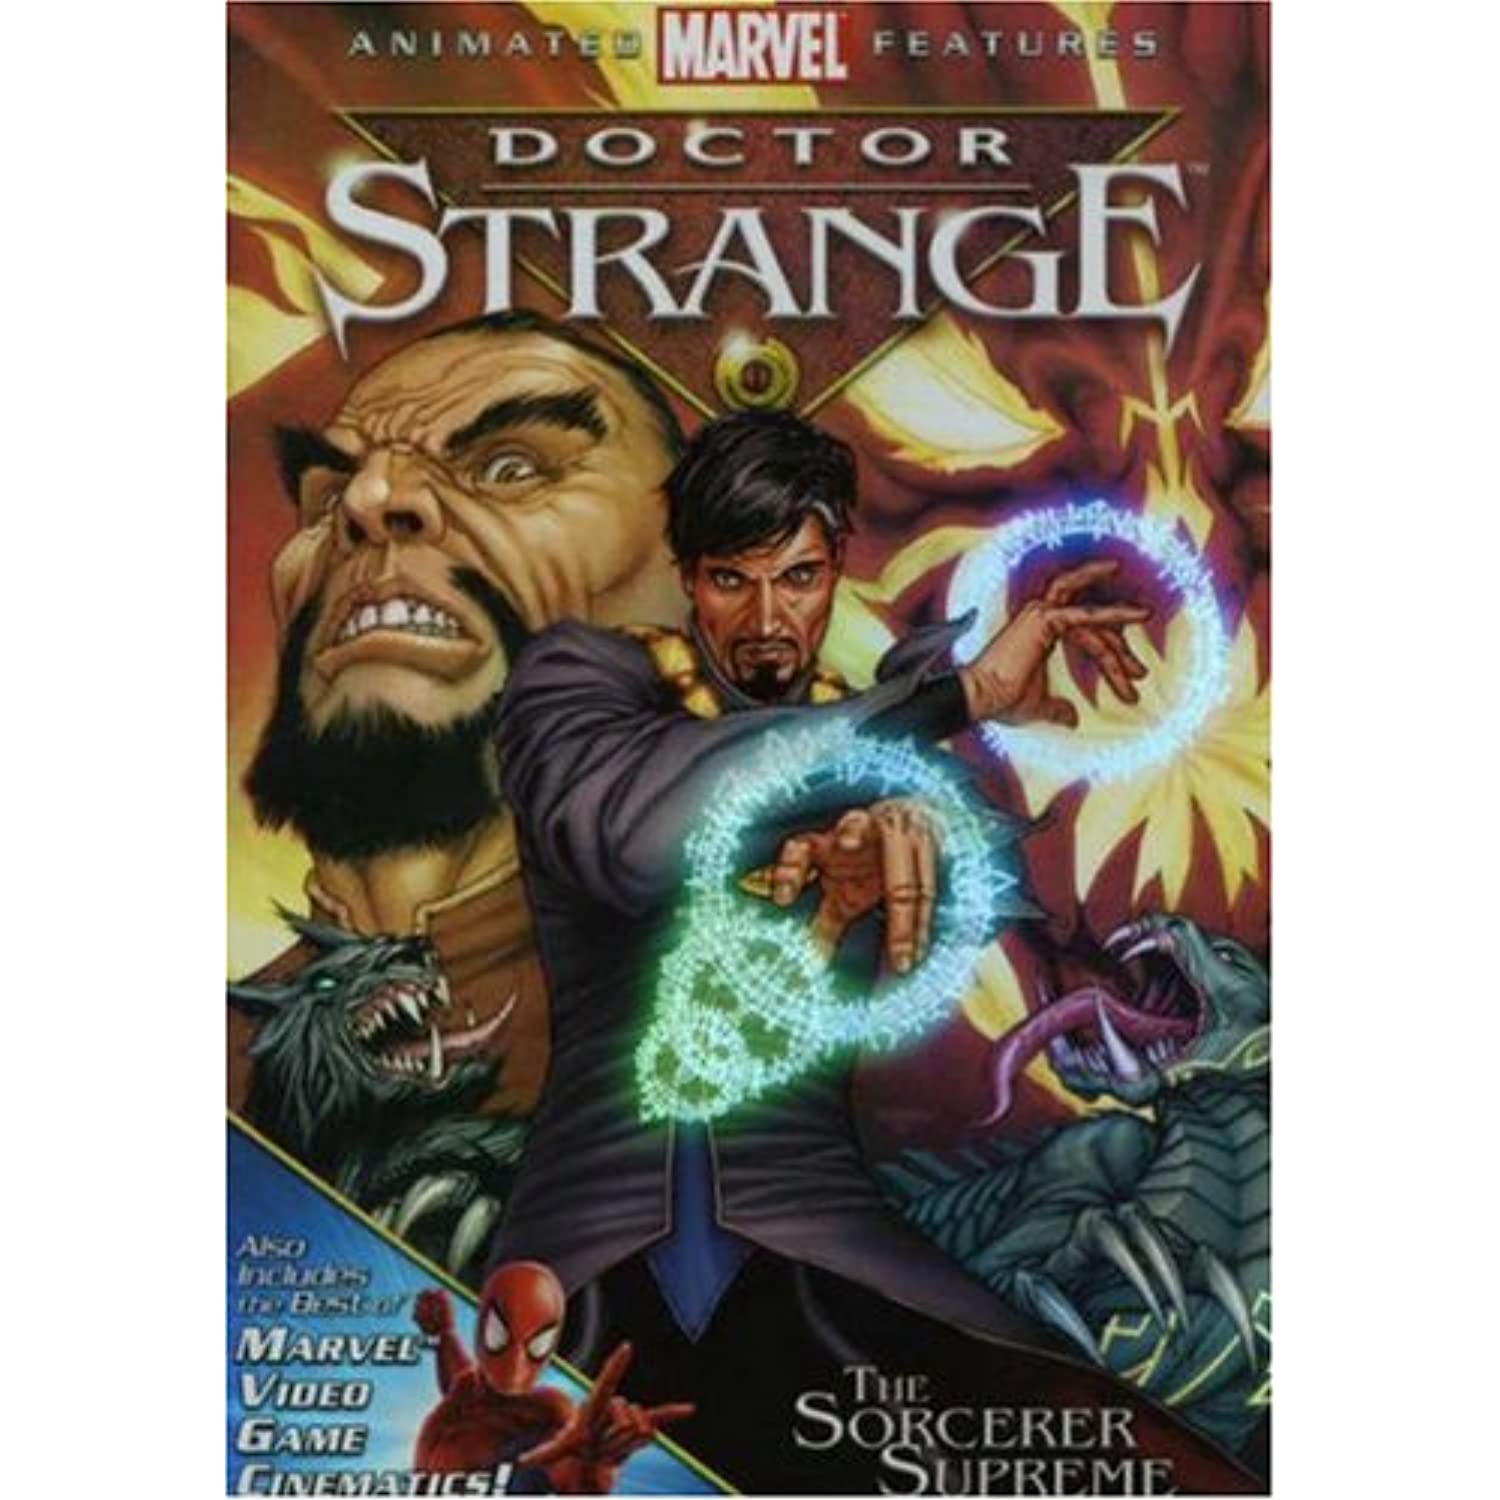 Doctor Strange: The Sorcerer Supreme DVD